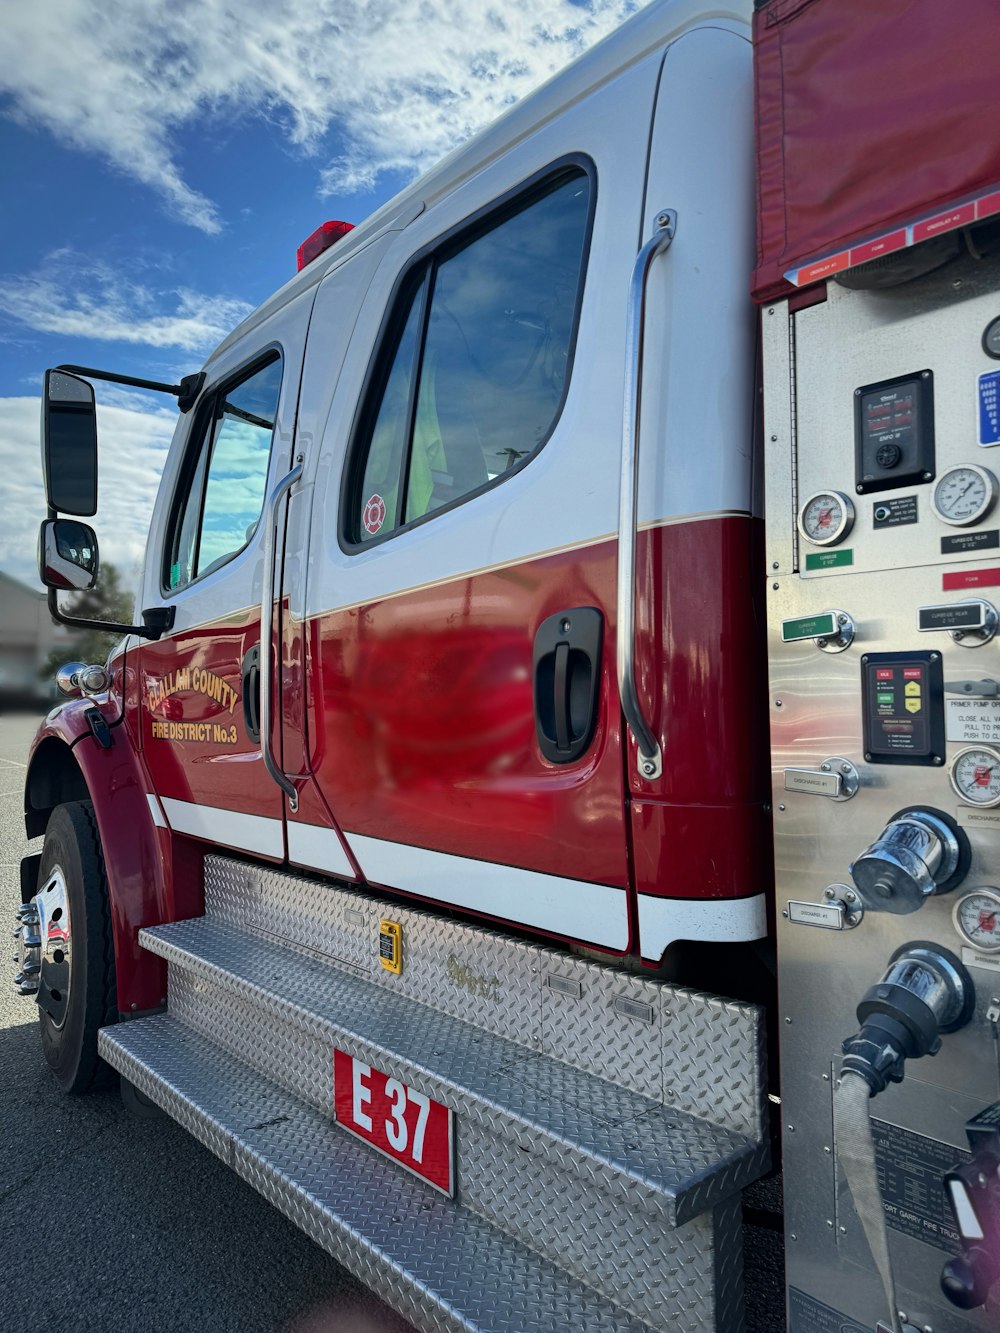 Un camion dei pompieri rosso e bianco parcheggiato in un parcheggio